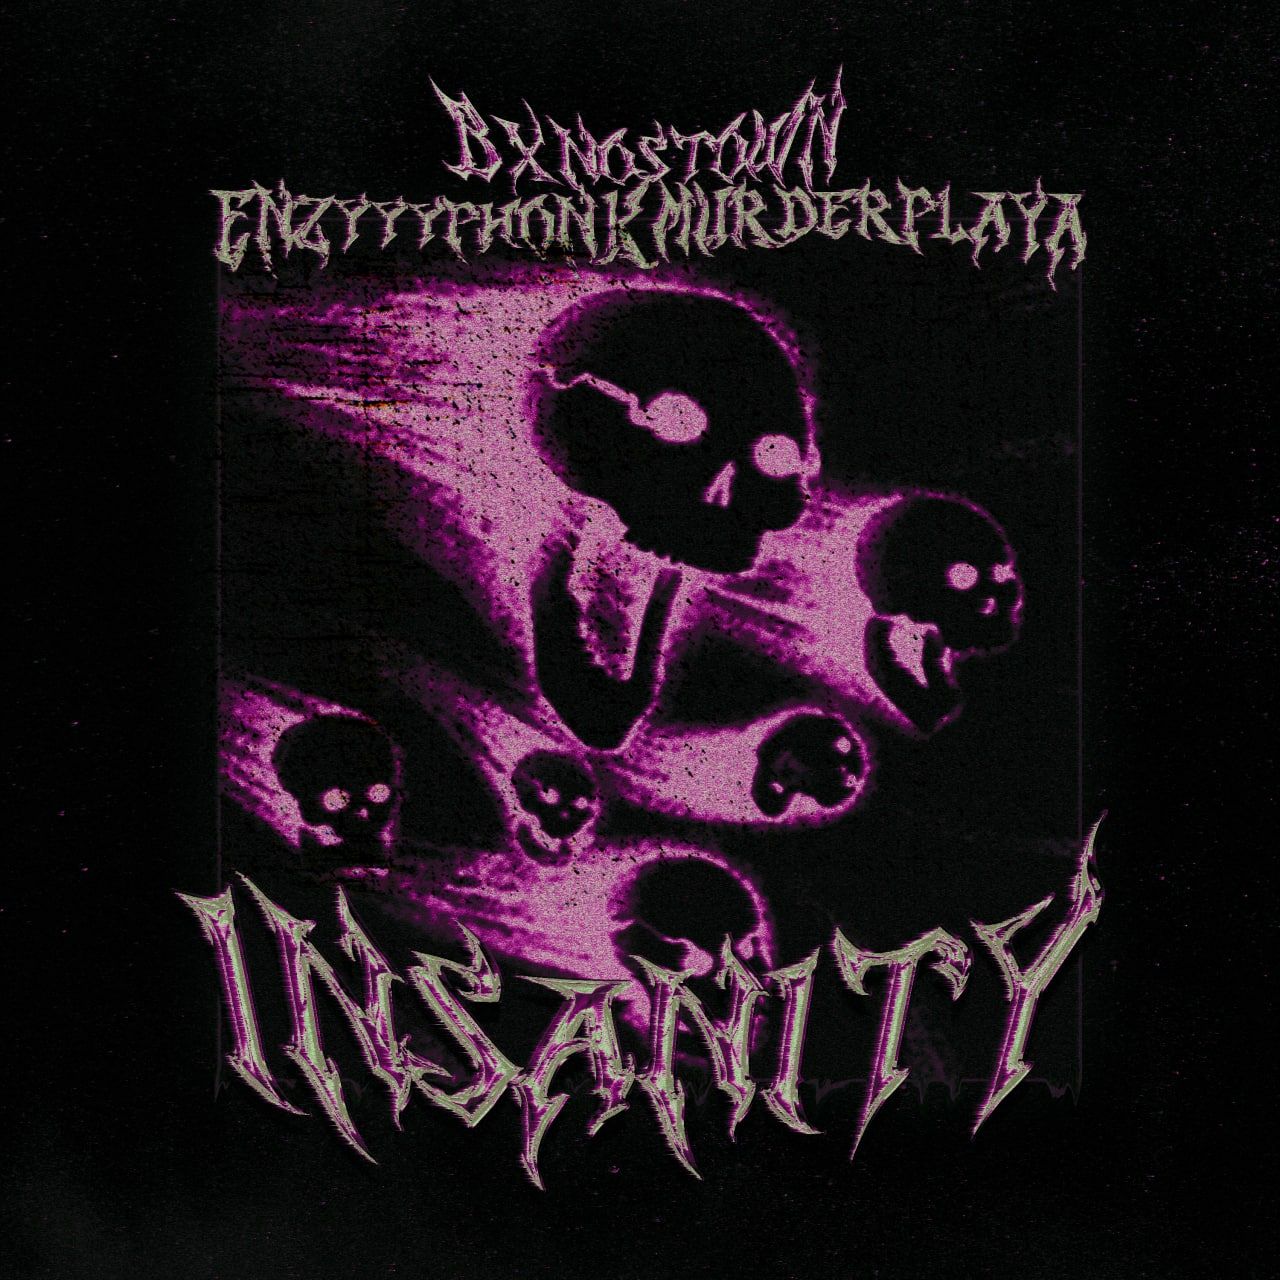 Daxistin Insanity-BXNOSTOWN & ENZYYYPHONK & MURDERPLAYA